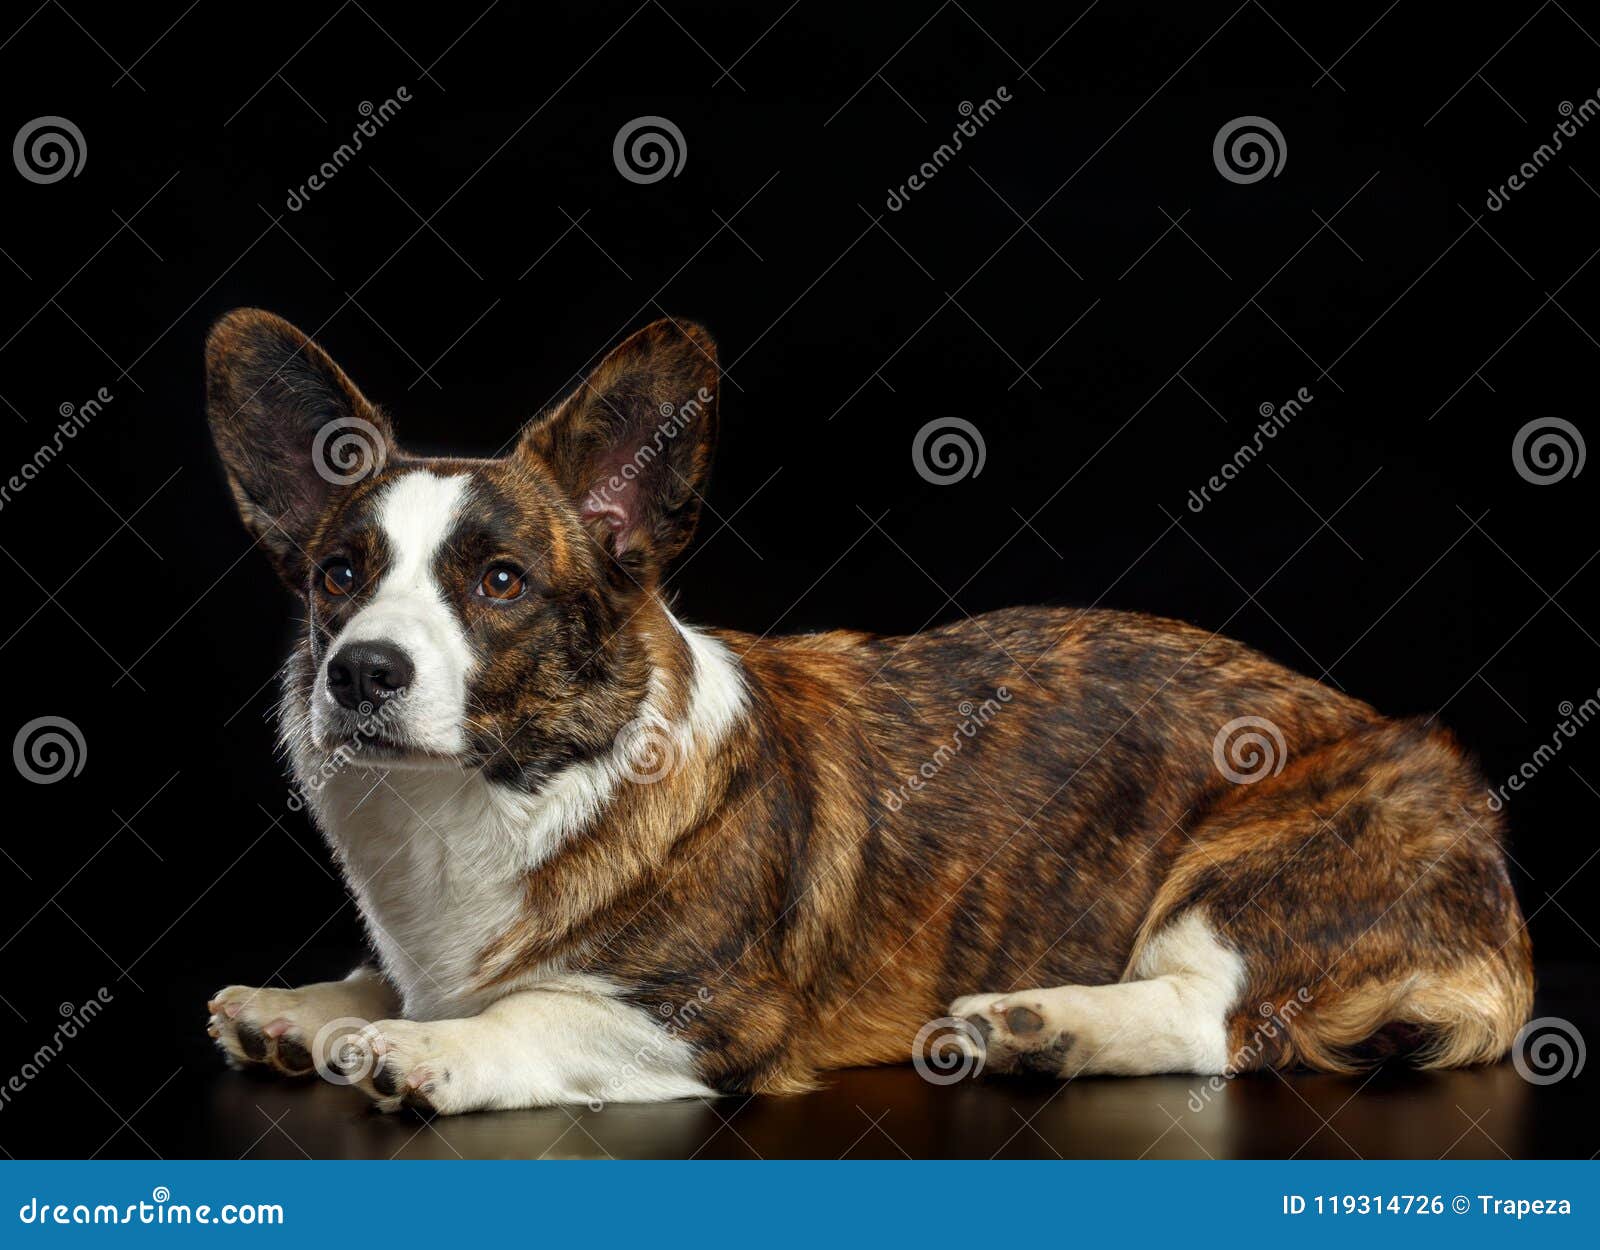 Welsh Corgi Cardigan Dog Isolated On Black Background Stock Photo Image Of Friend Small 119314726